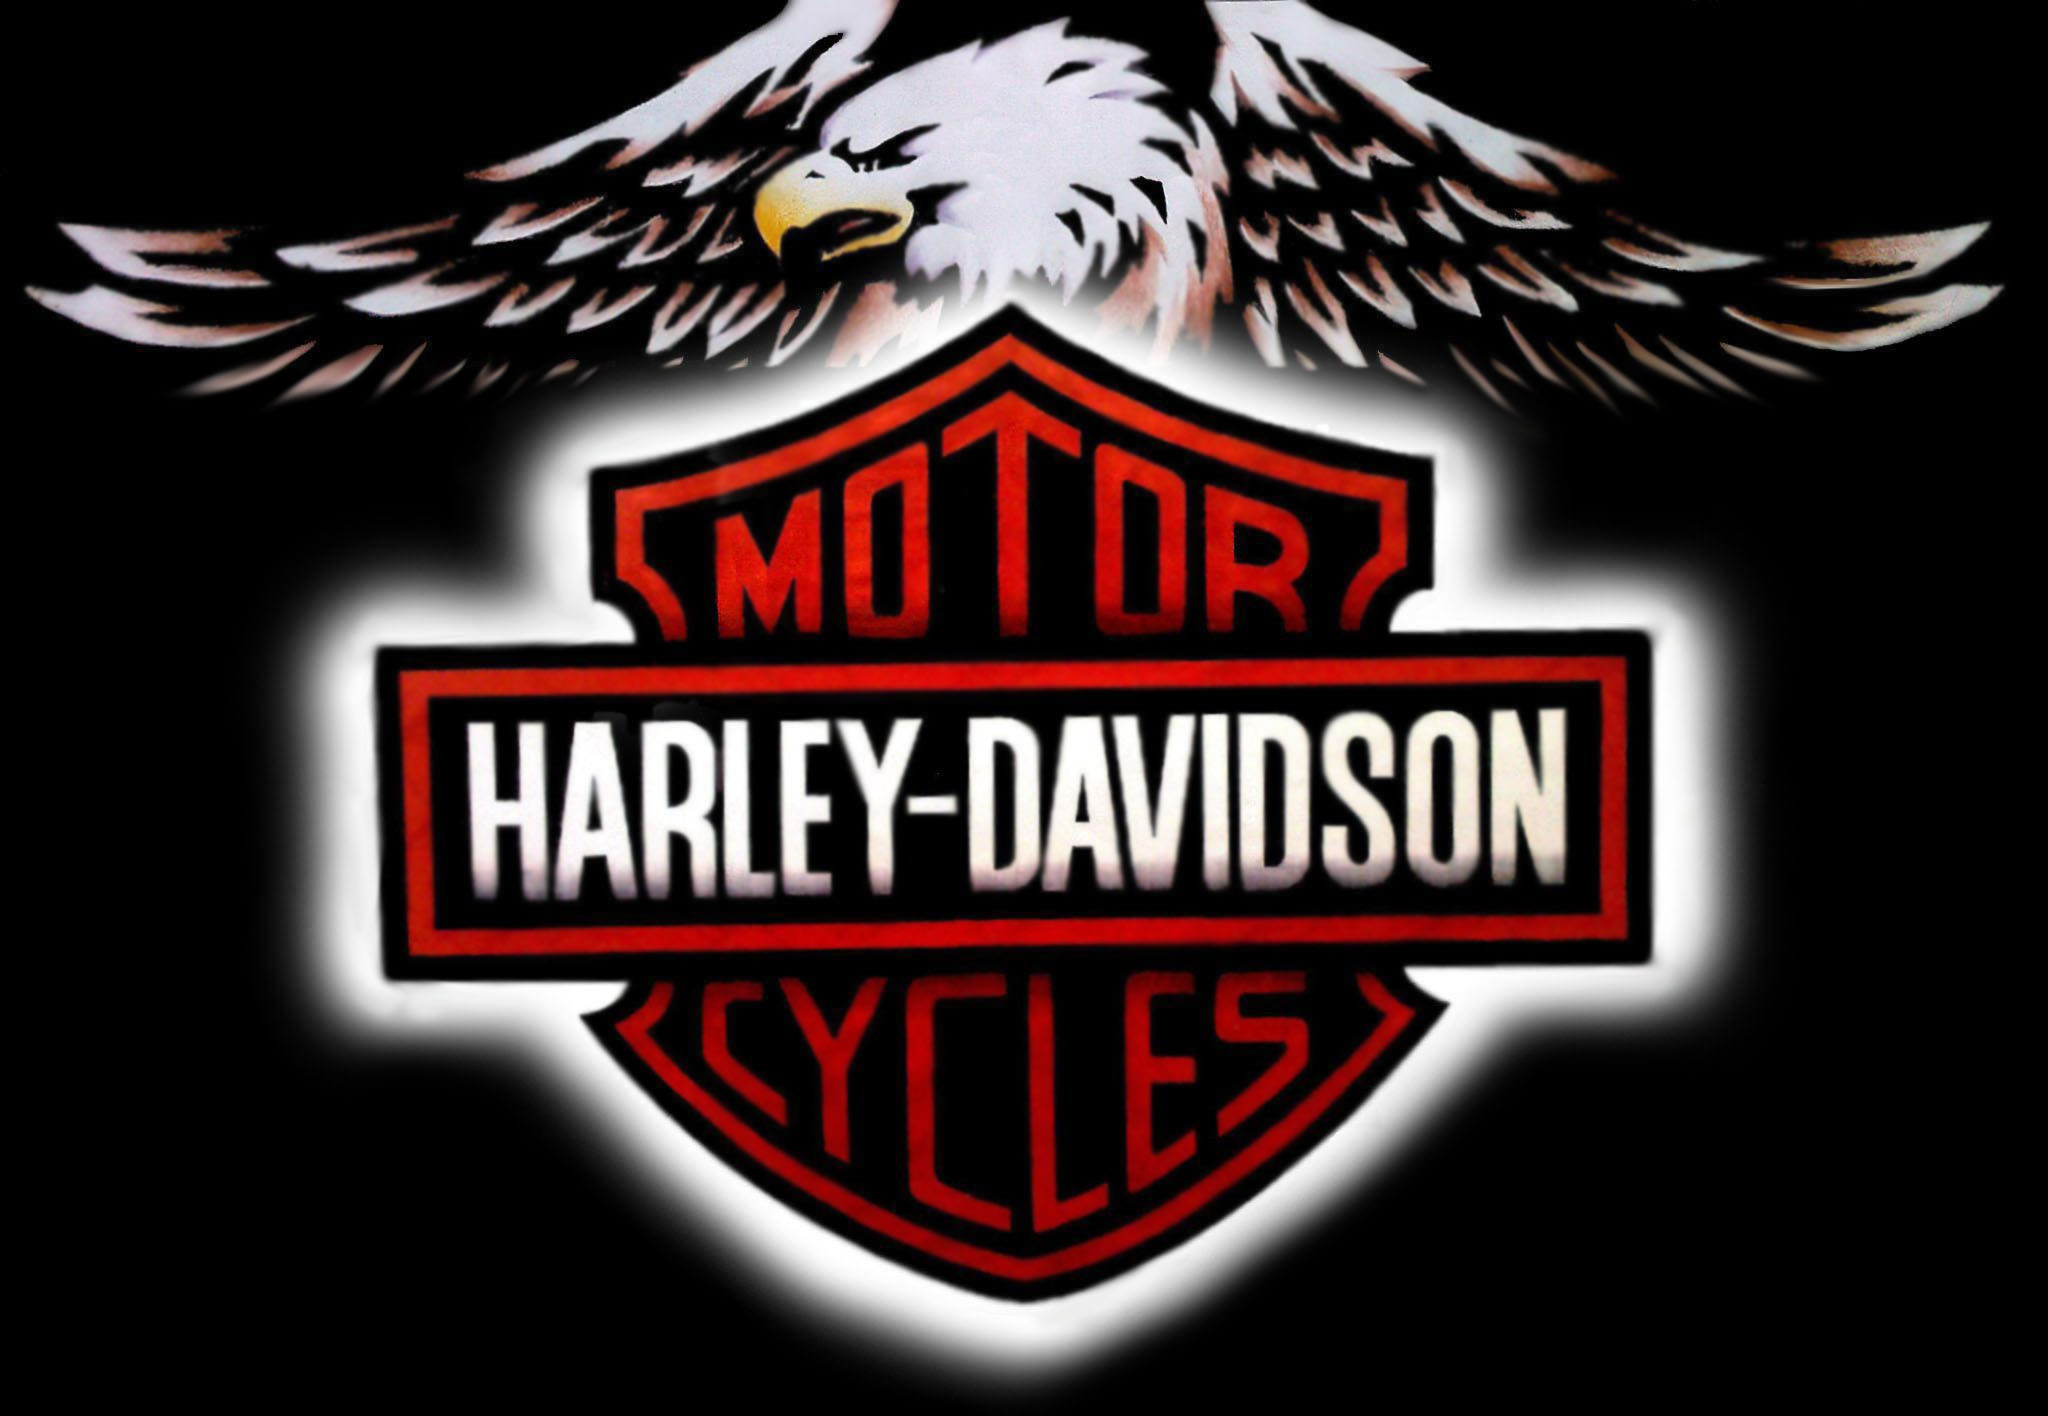 Harley Davidson Road King And